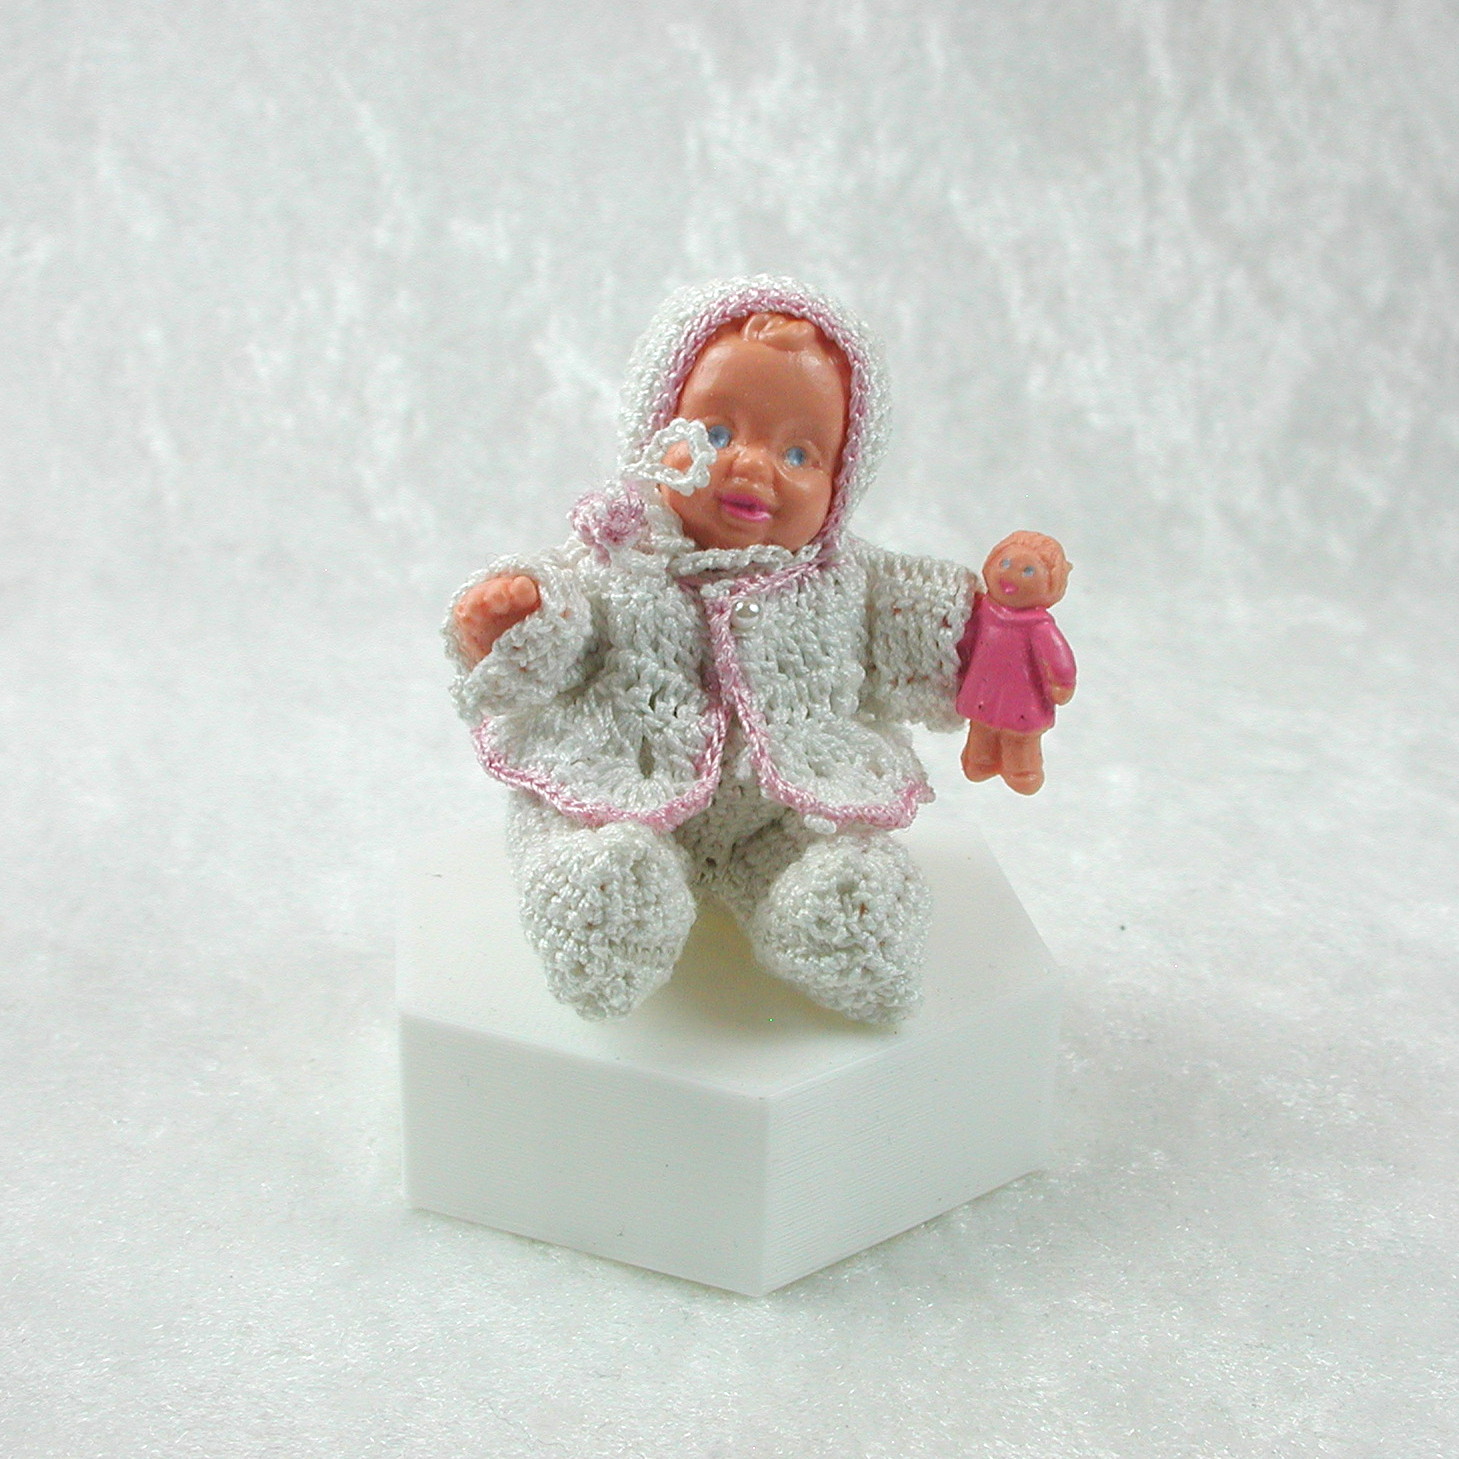 Sitzende Puppe in gehäkelter Kleidung in Miniatur